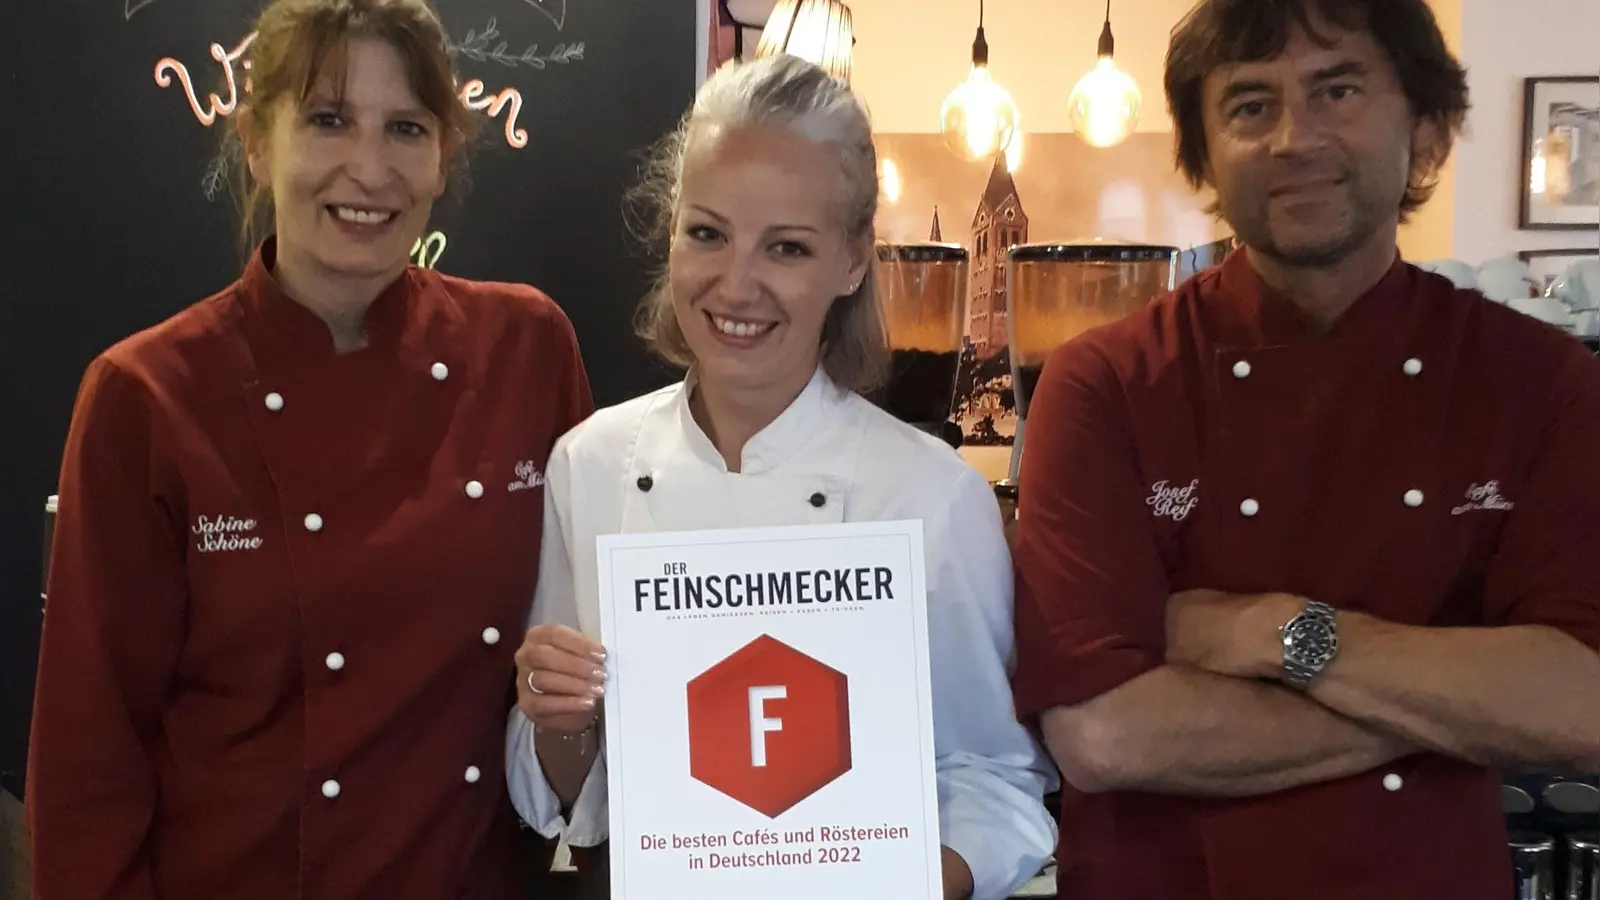 Sabine Schöne, Natalie Wagner und Josef Reif (v.li.) präsentieren hoch erfreut die FEINSCHMECKER-Urkunde. (Foto: Café am Münster)